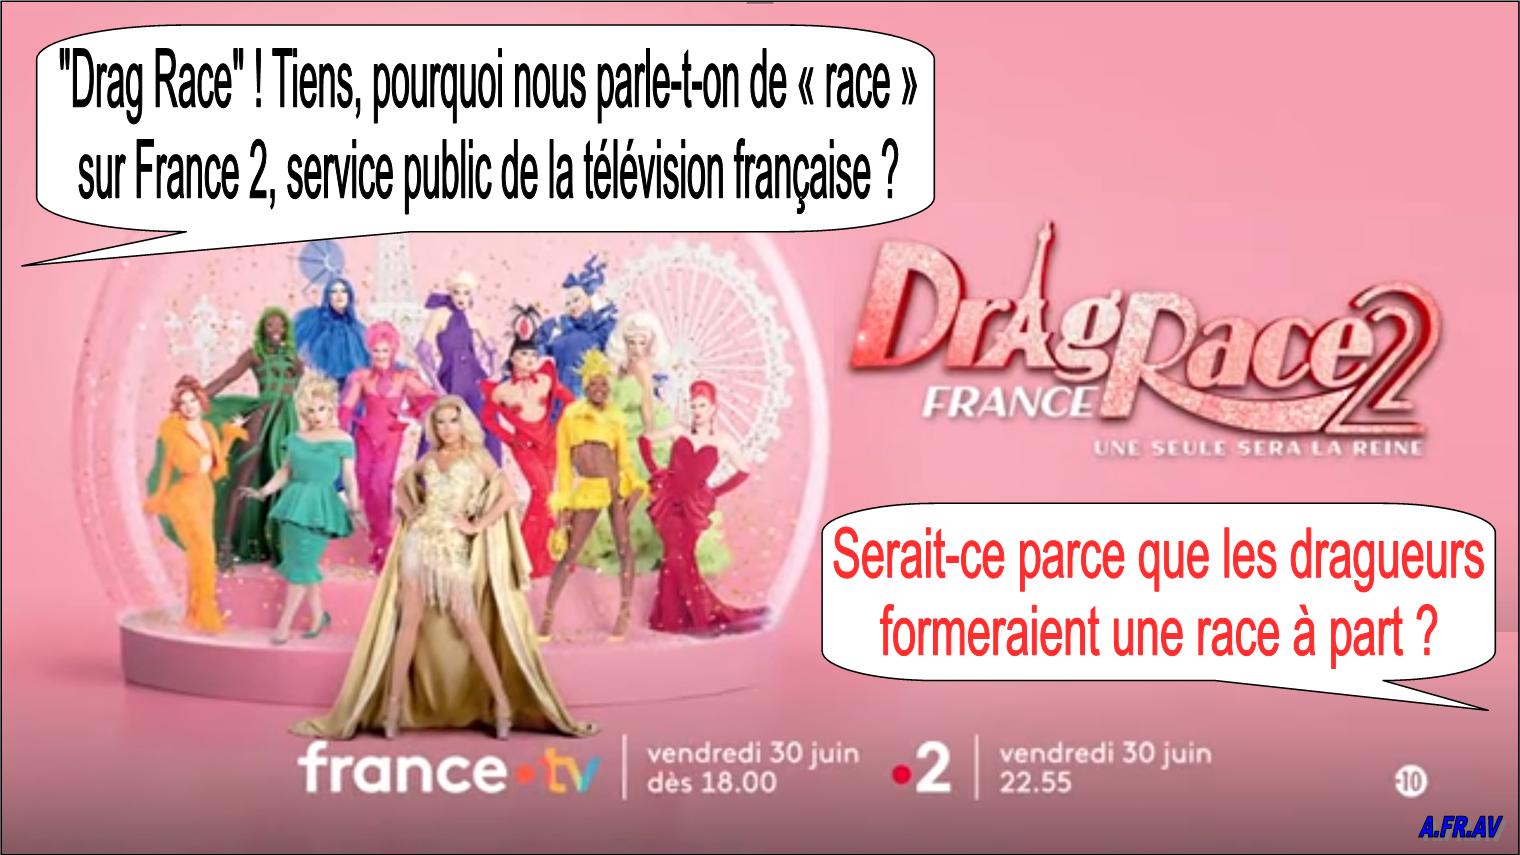 Drag-Race 2 sur France 2, France Télévisions